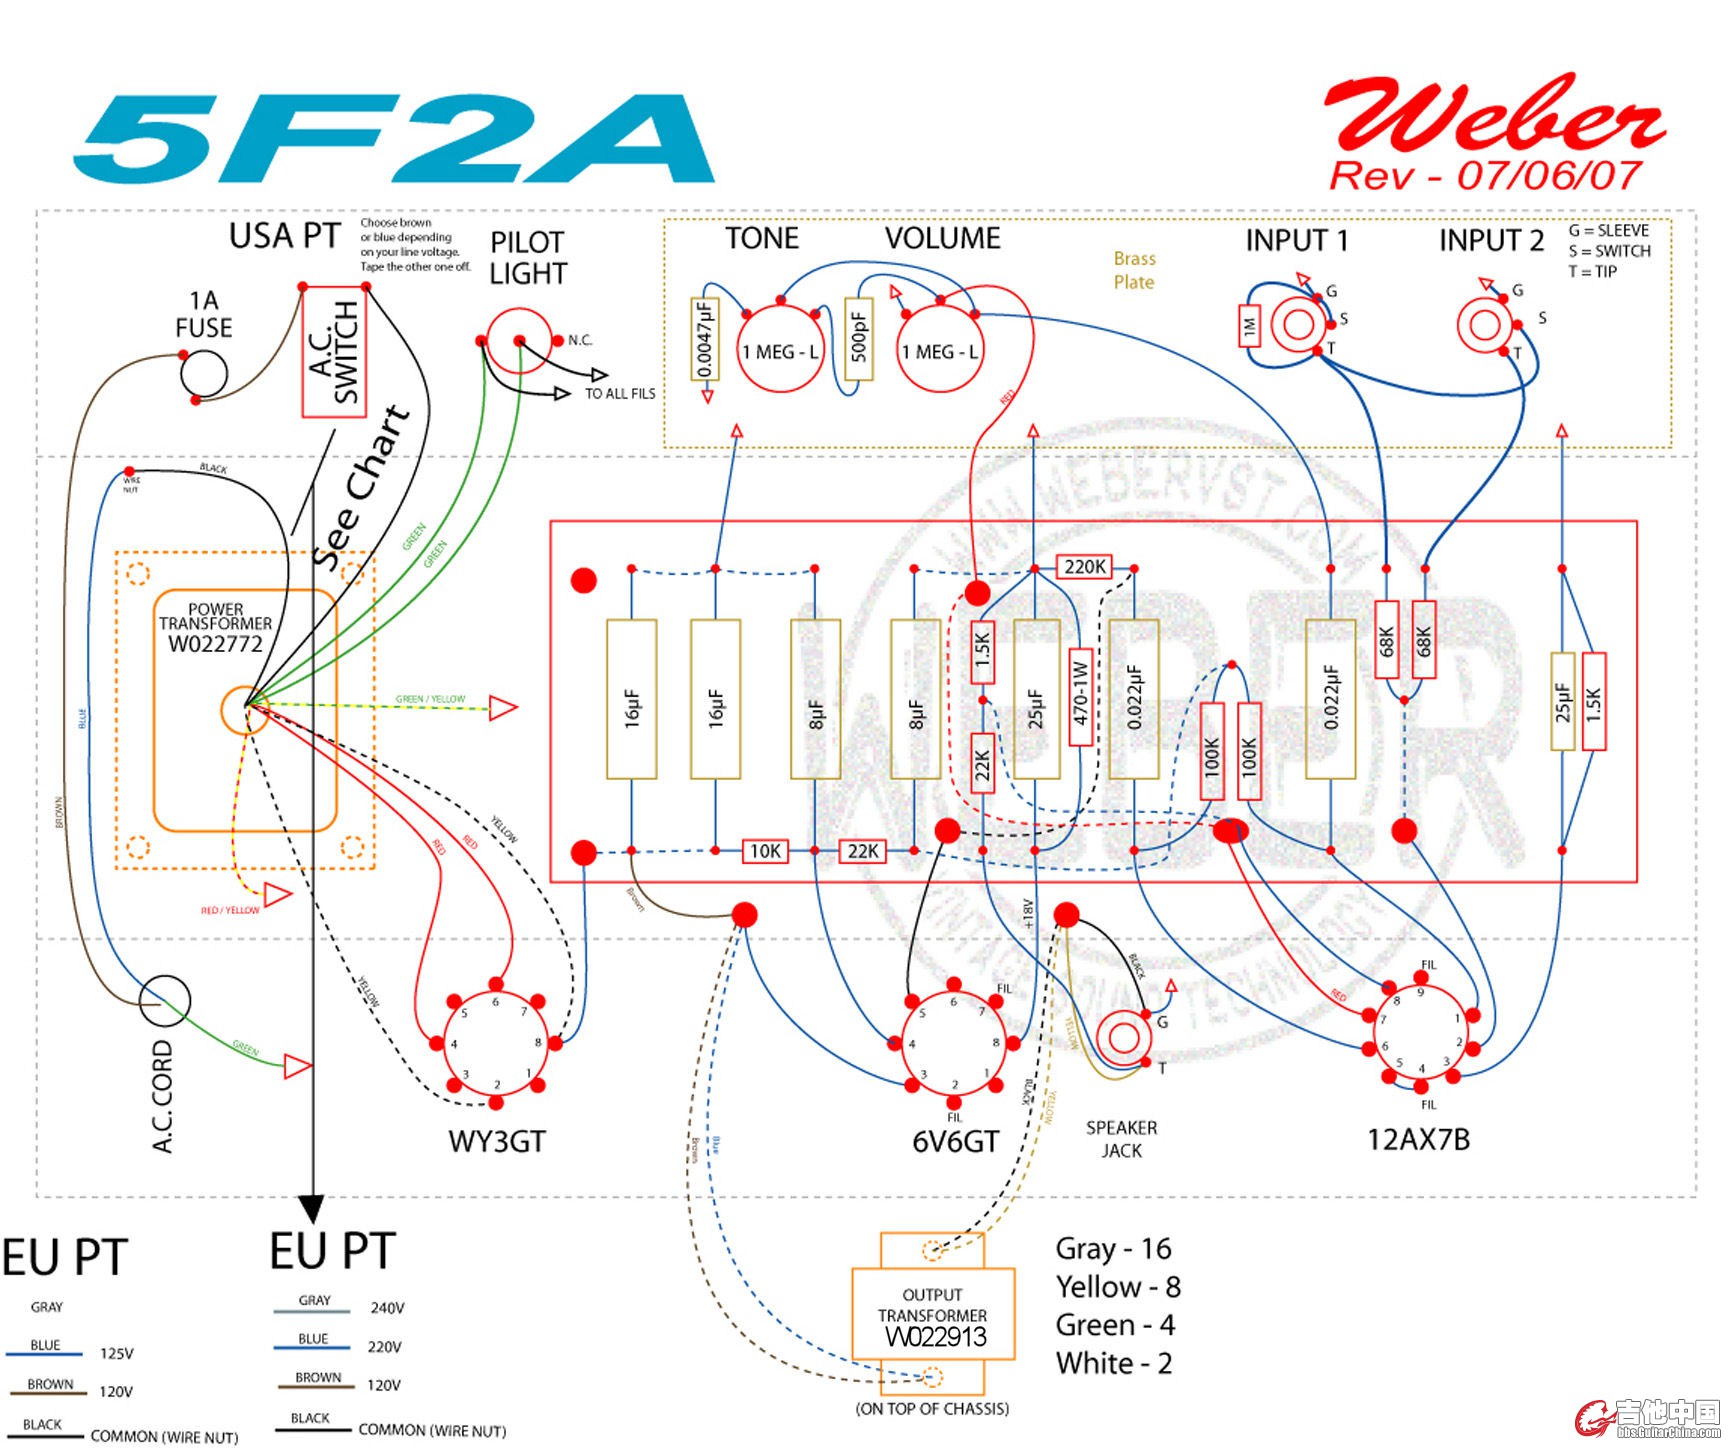 5f2a_layout.jpg